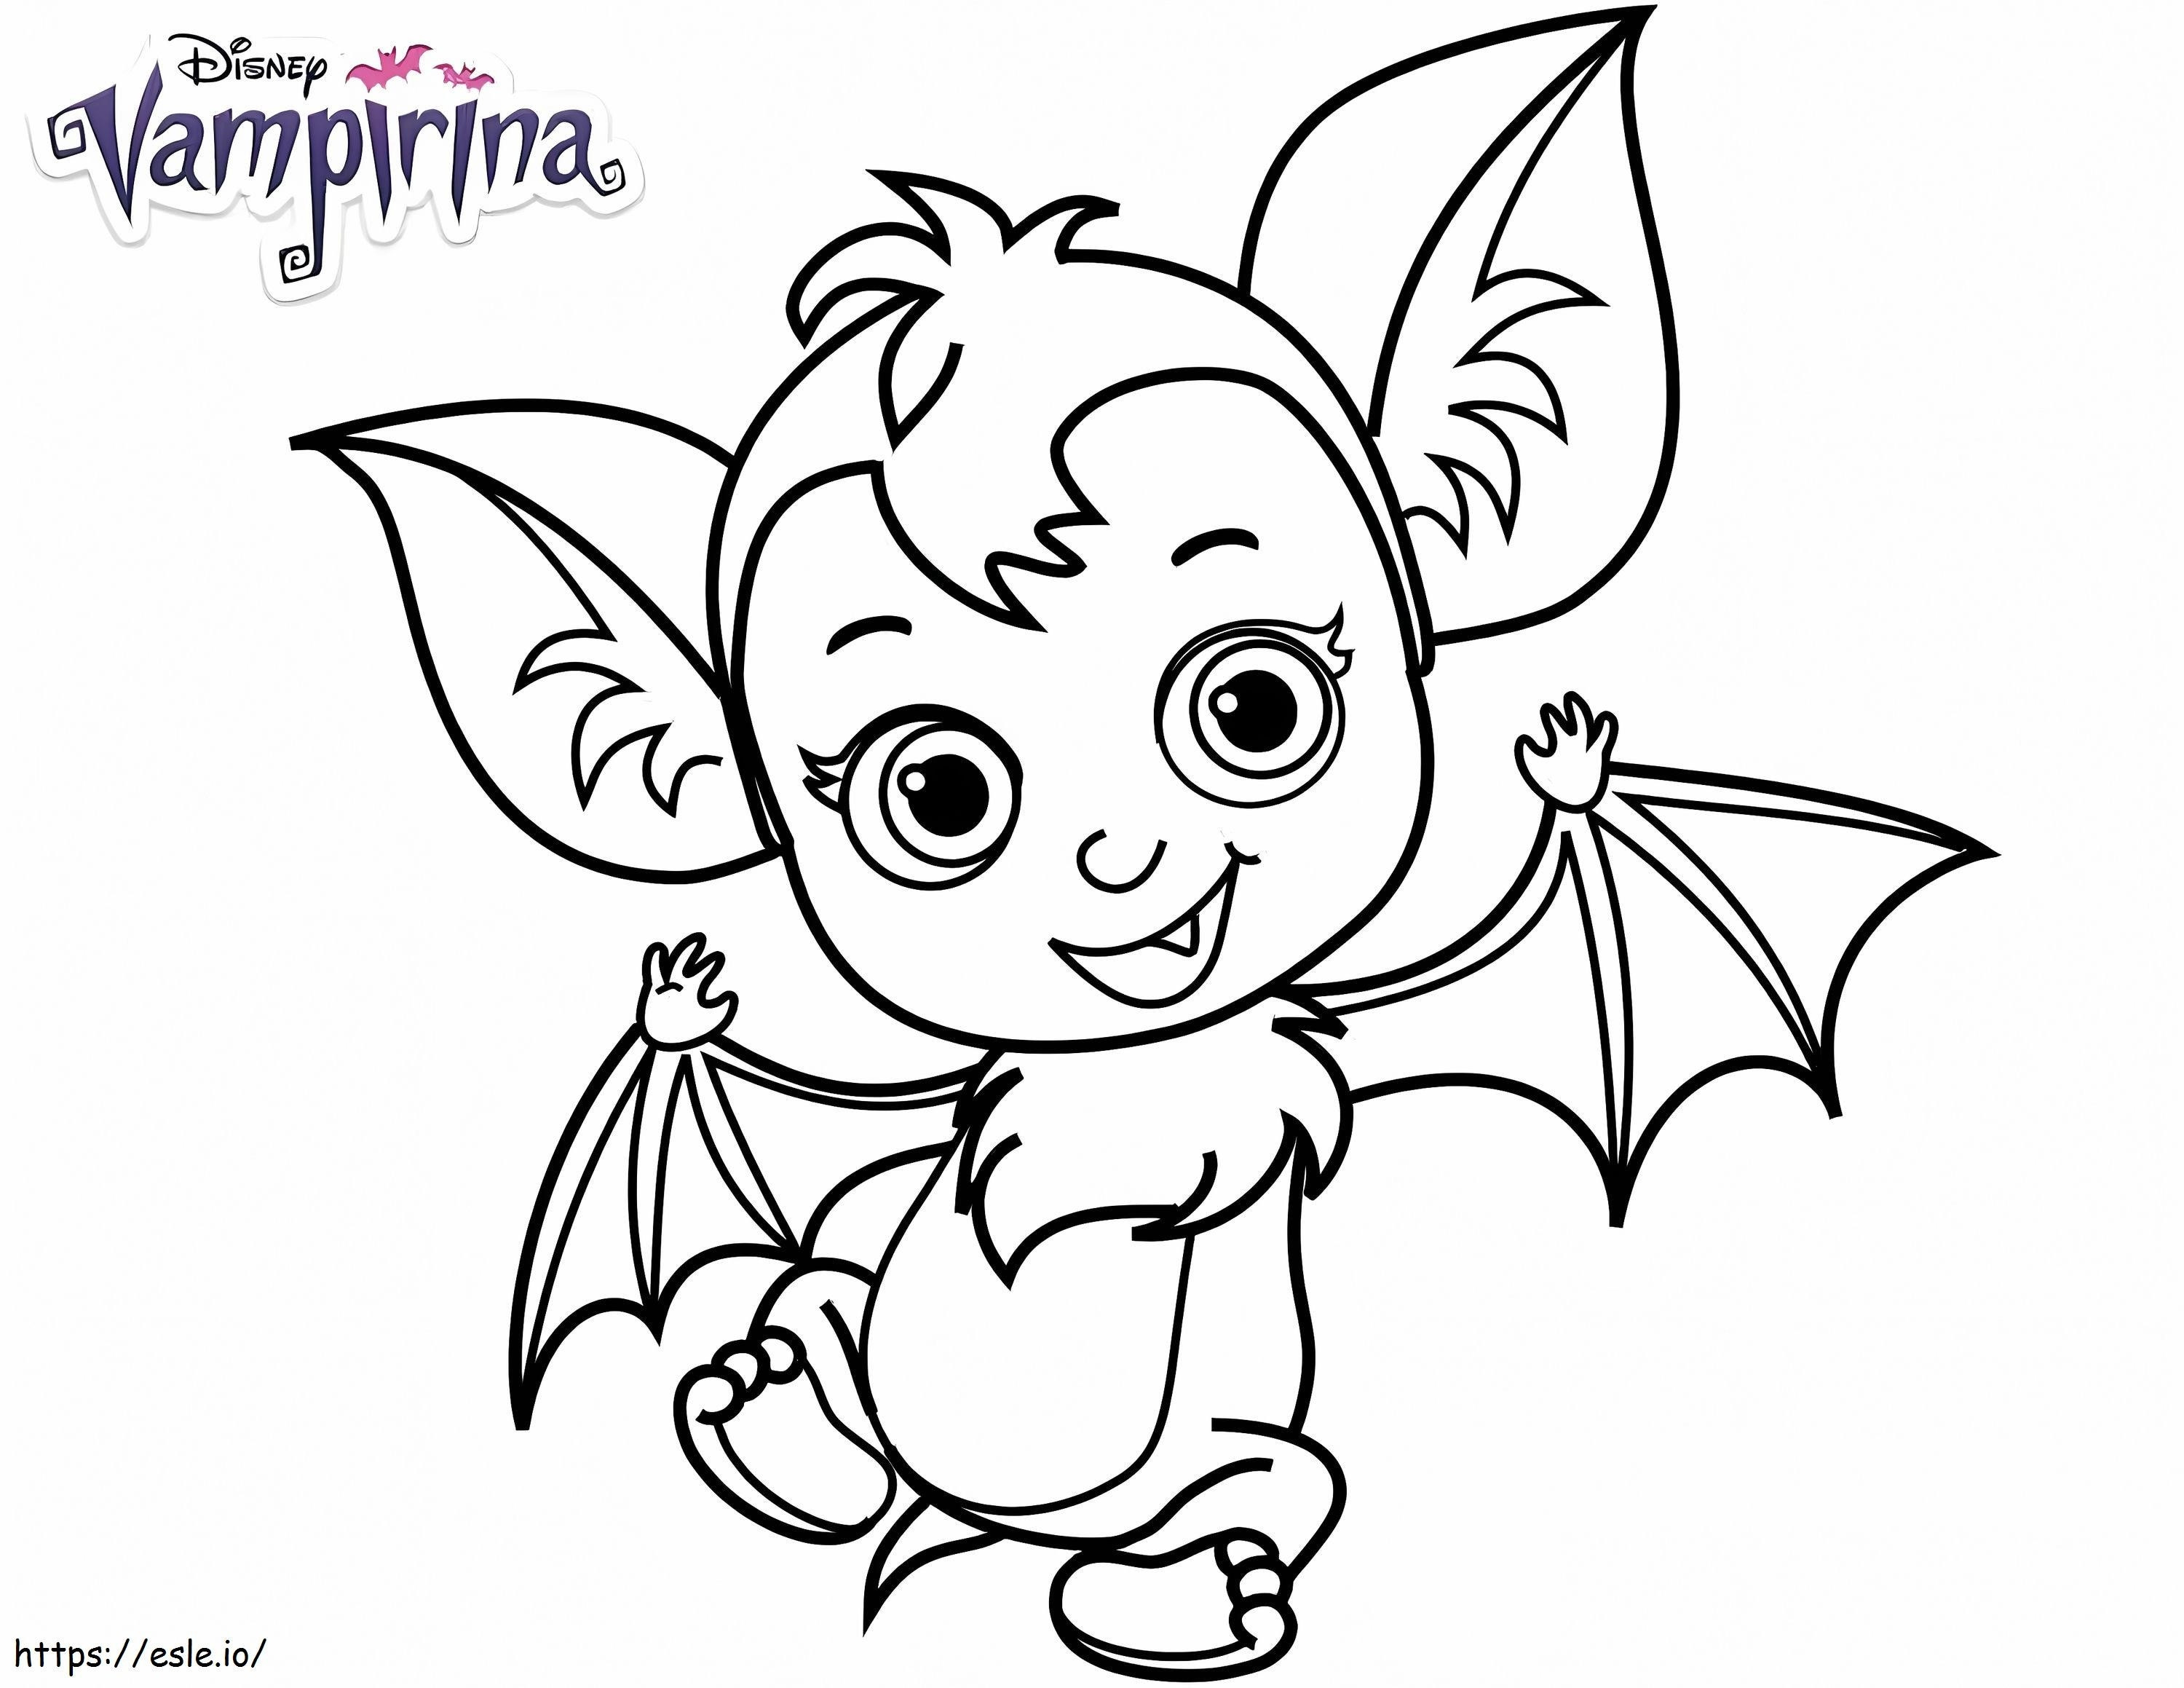 1580373398 Lindo Bebé Murciélago Nosy De Disney Vampirina Para Imprimir Gratis para colorear